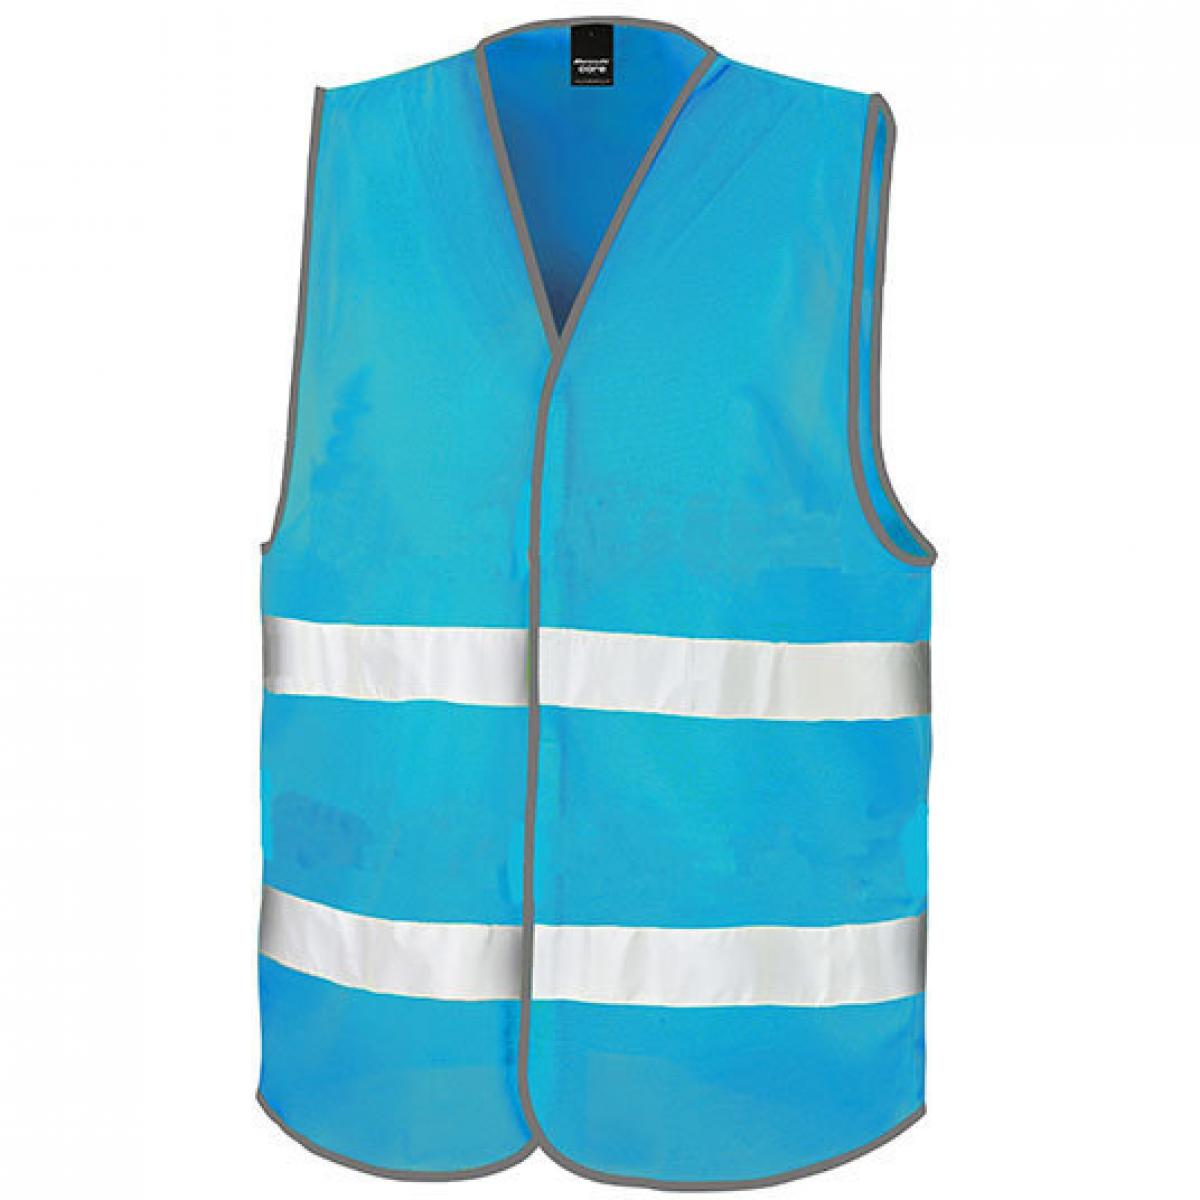 Hersteller: Result Core Herstellernummer: R200X Artikelbezeichnung: Motorist Safety Vest / ISOEN20471:2013, Klasse 2 Farbe: Sky